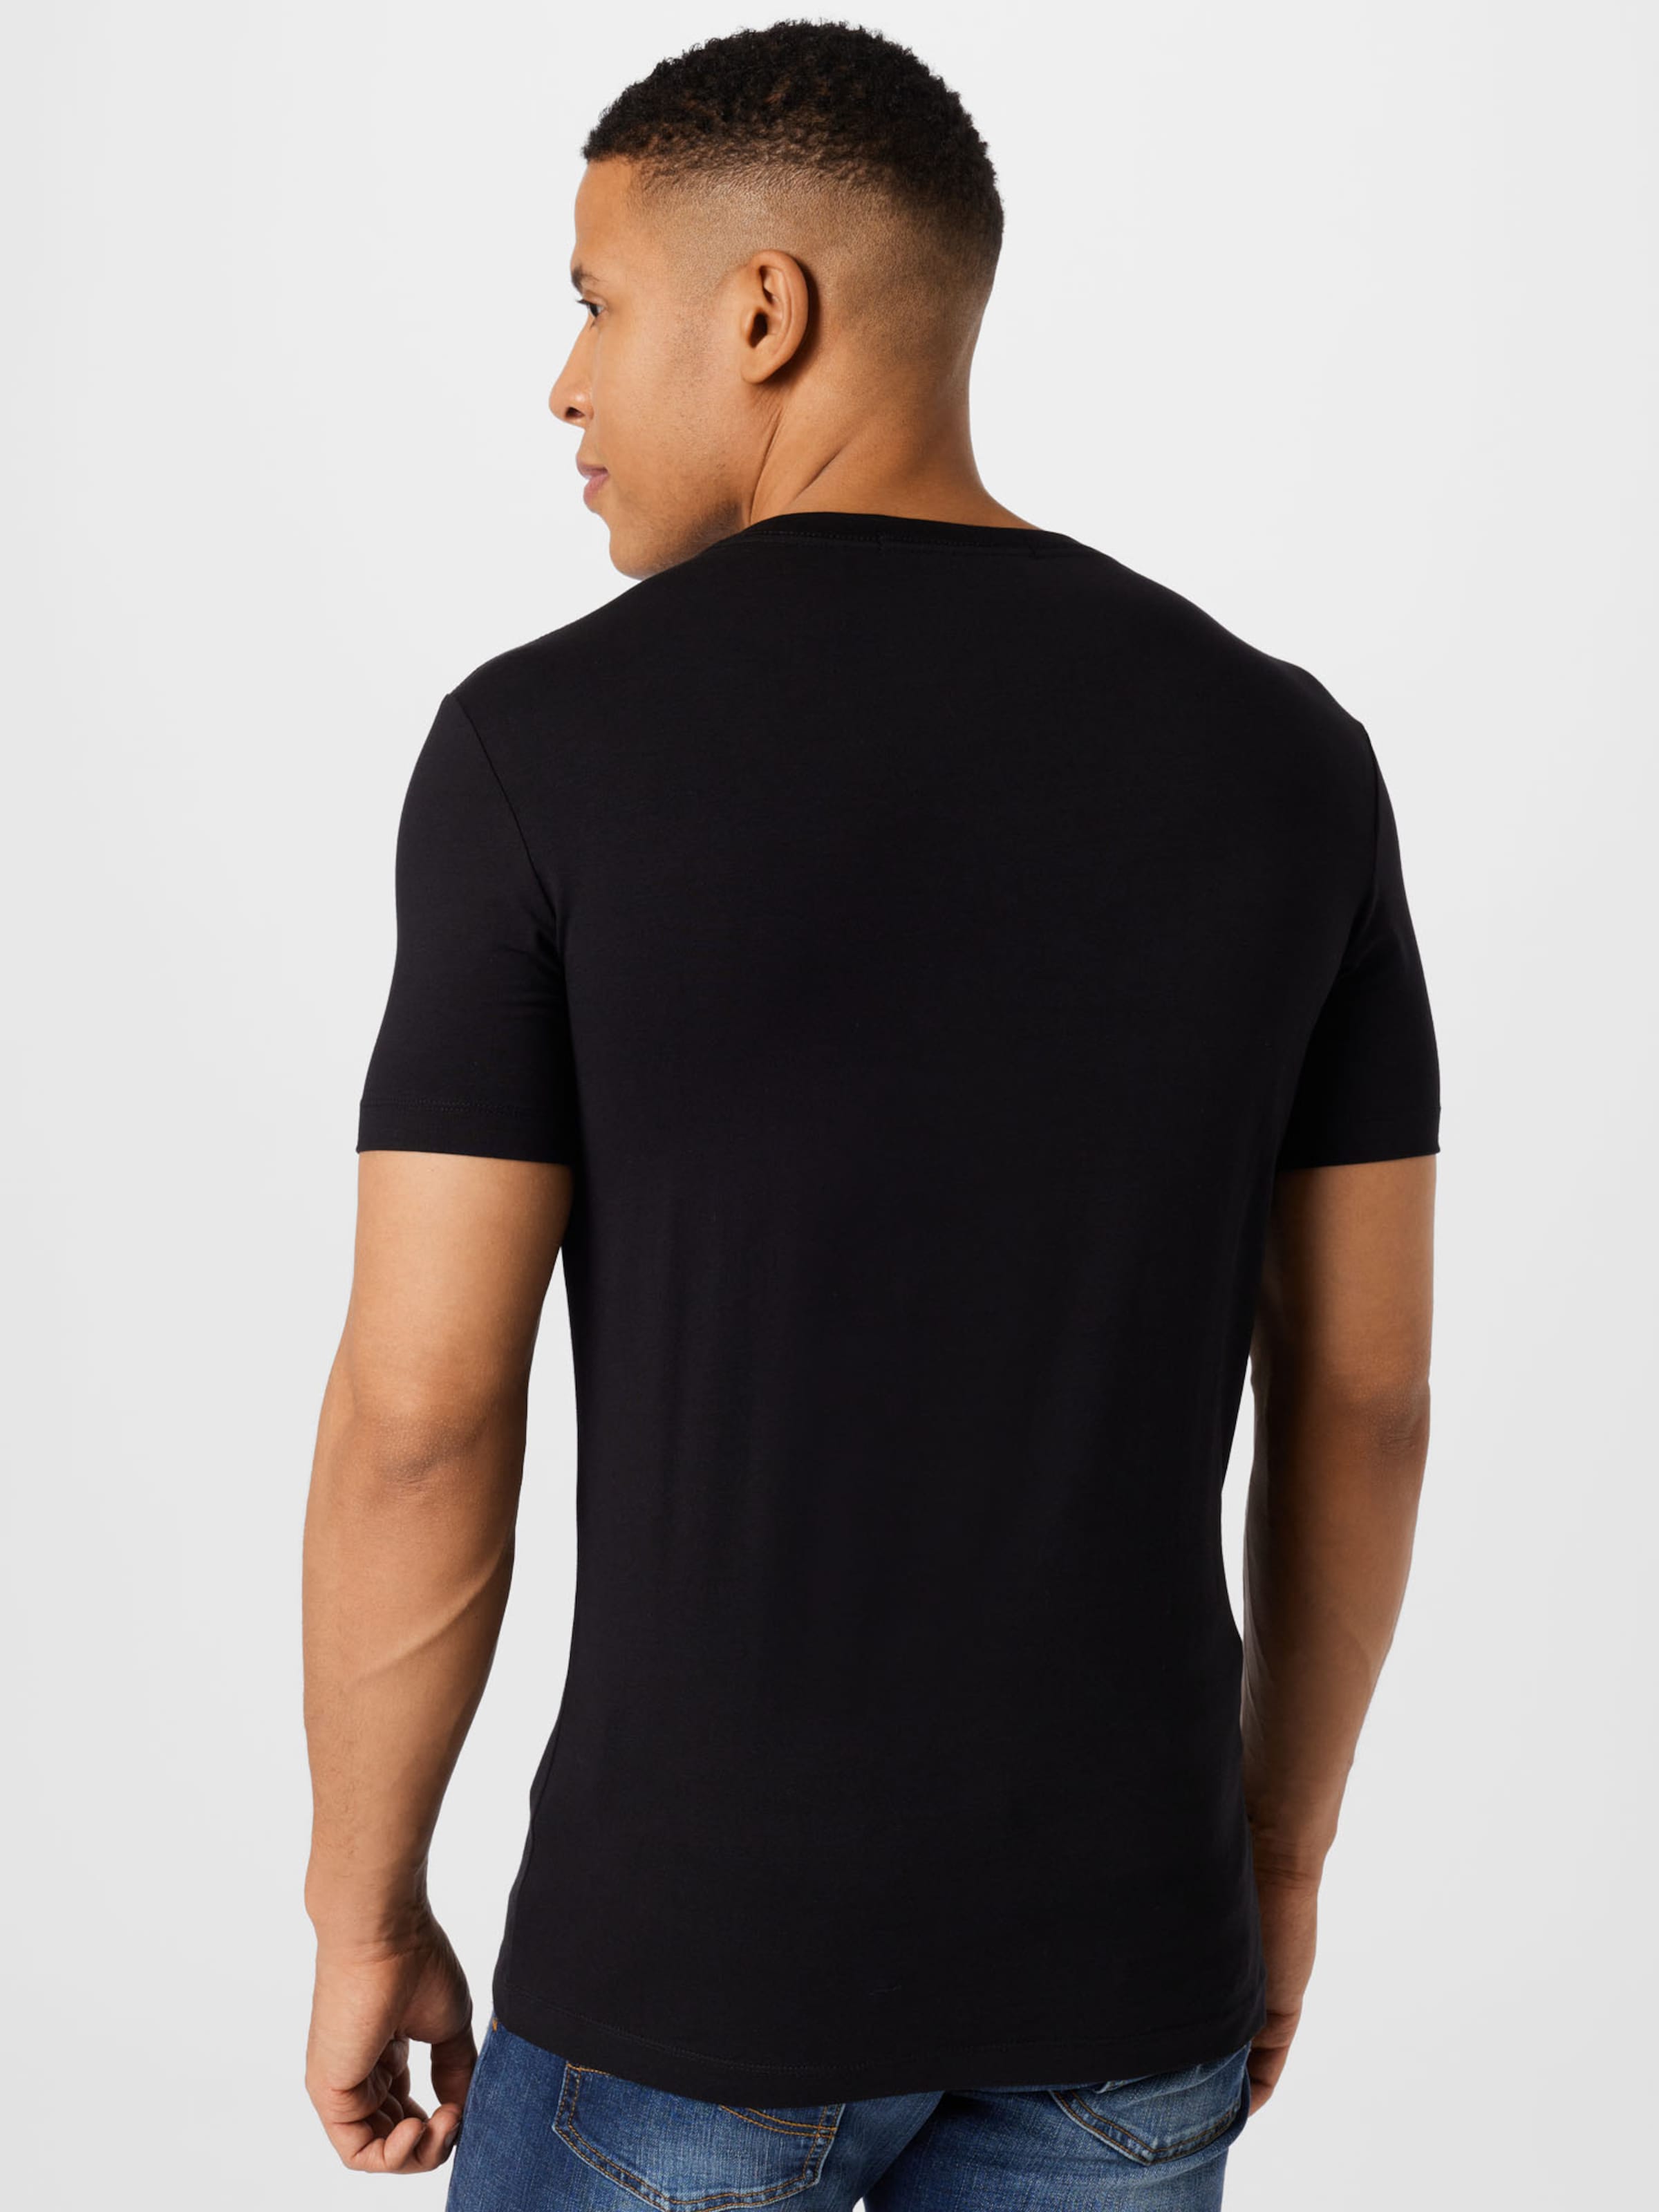 Männer Shirts Calvin Klein Jeans T-Shirt in Schwarz - AM89889